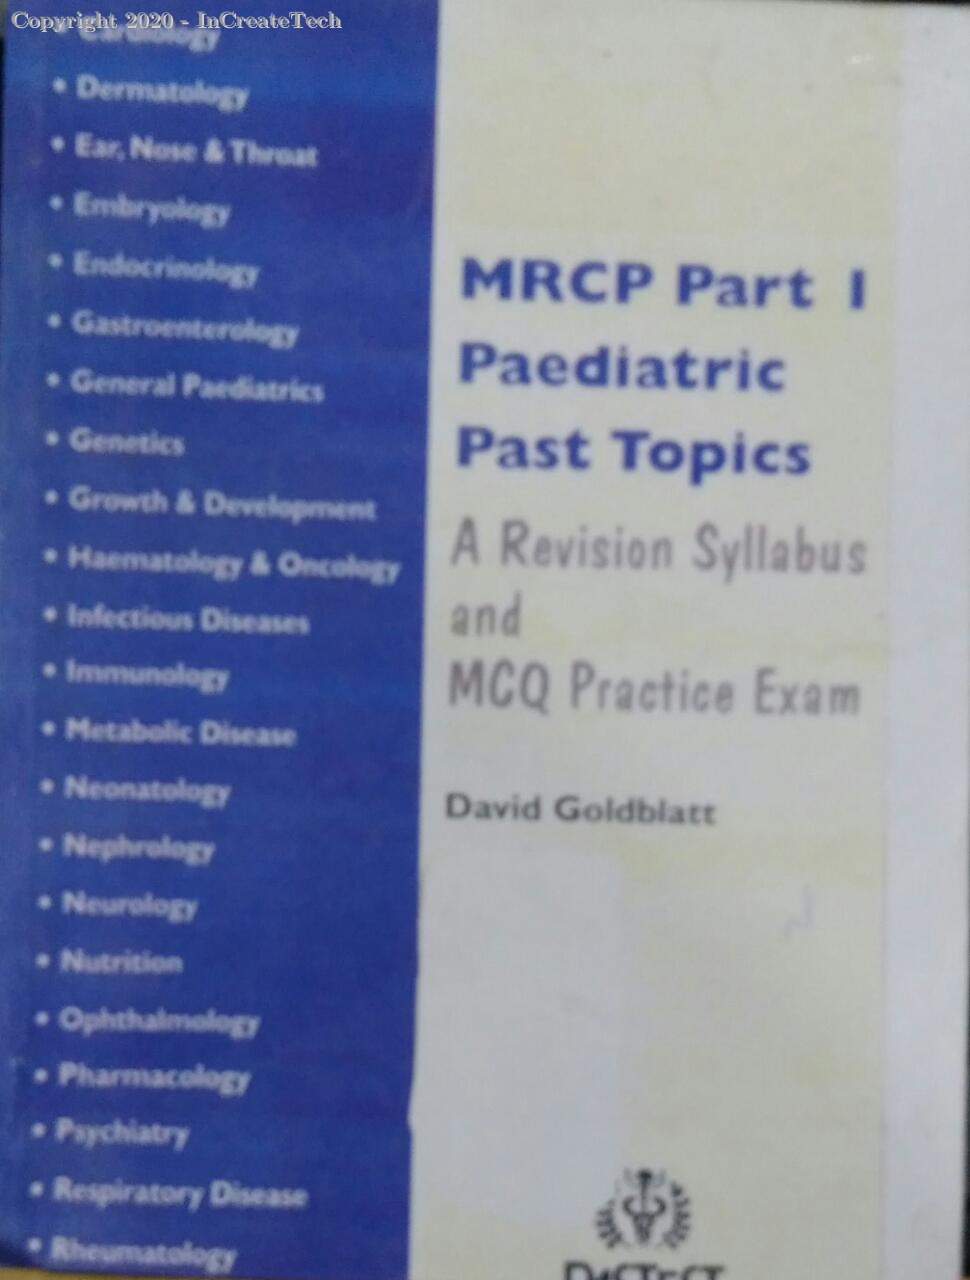 MRCP Part 1 Paediatric Past Topics